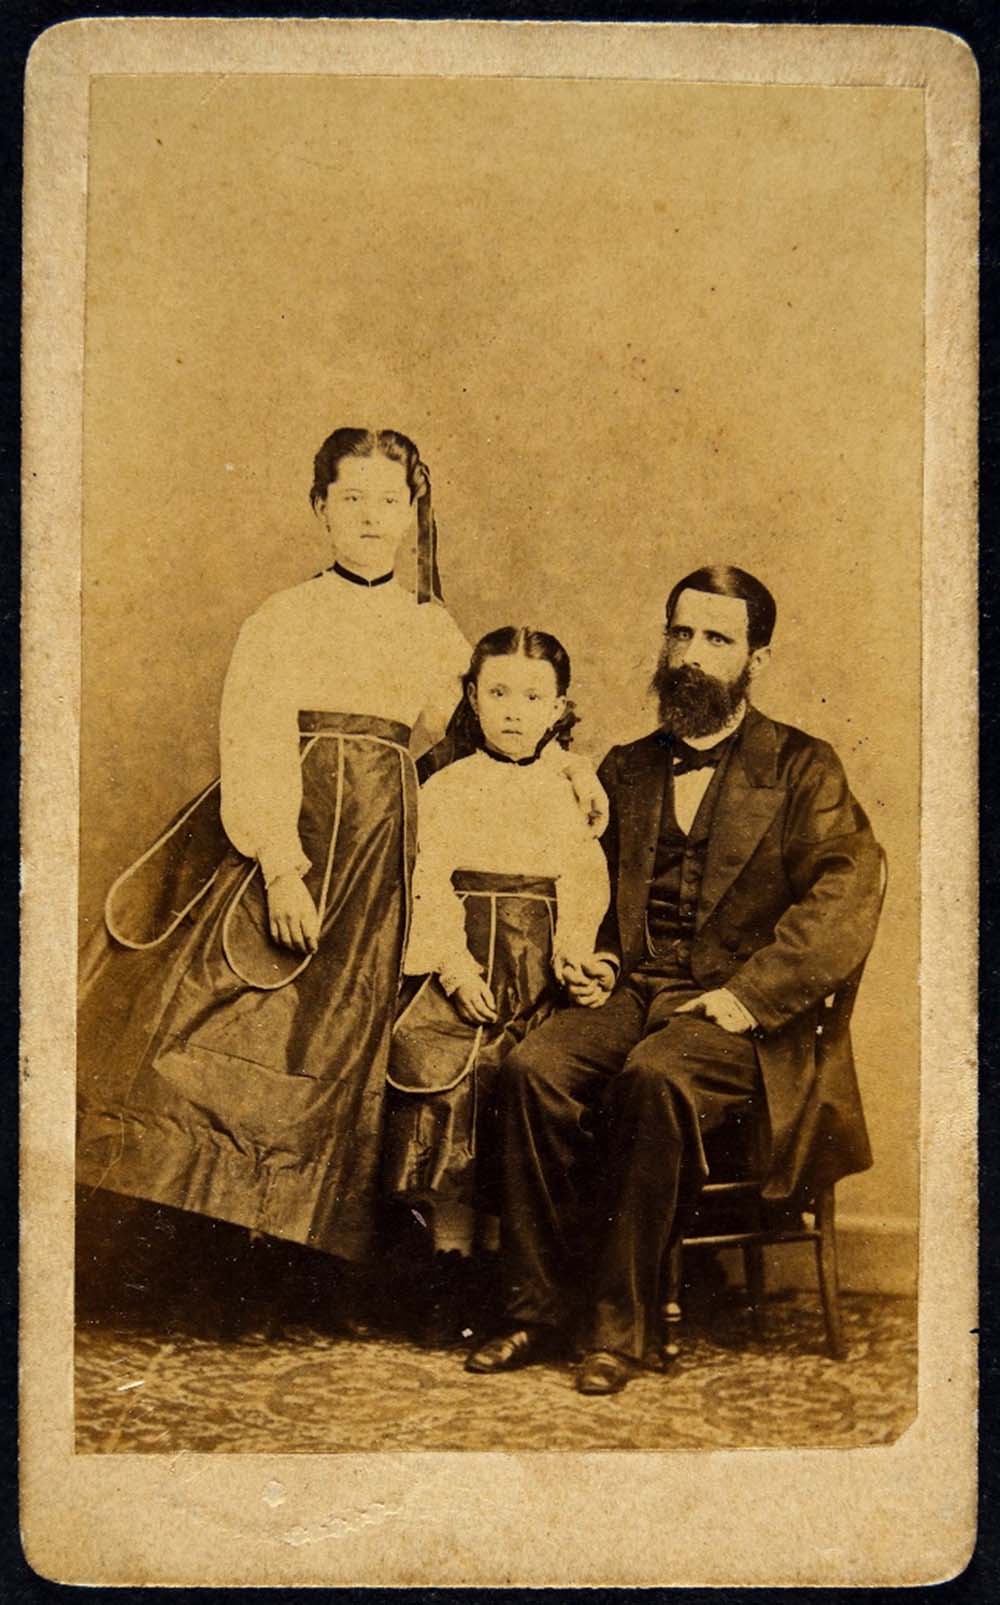 Um homem de barba está sentado, acompanhado por duas meninas. A mais nova está ao seu lado, enquanto a mais velha fica ao lado da mais nova, ambas em pé. Os três estão vestidos com trajes de época que remetem ao estilo da época retratada na imagem.